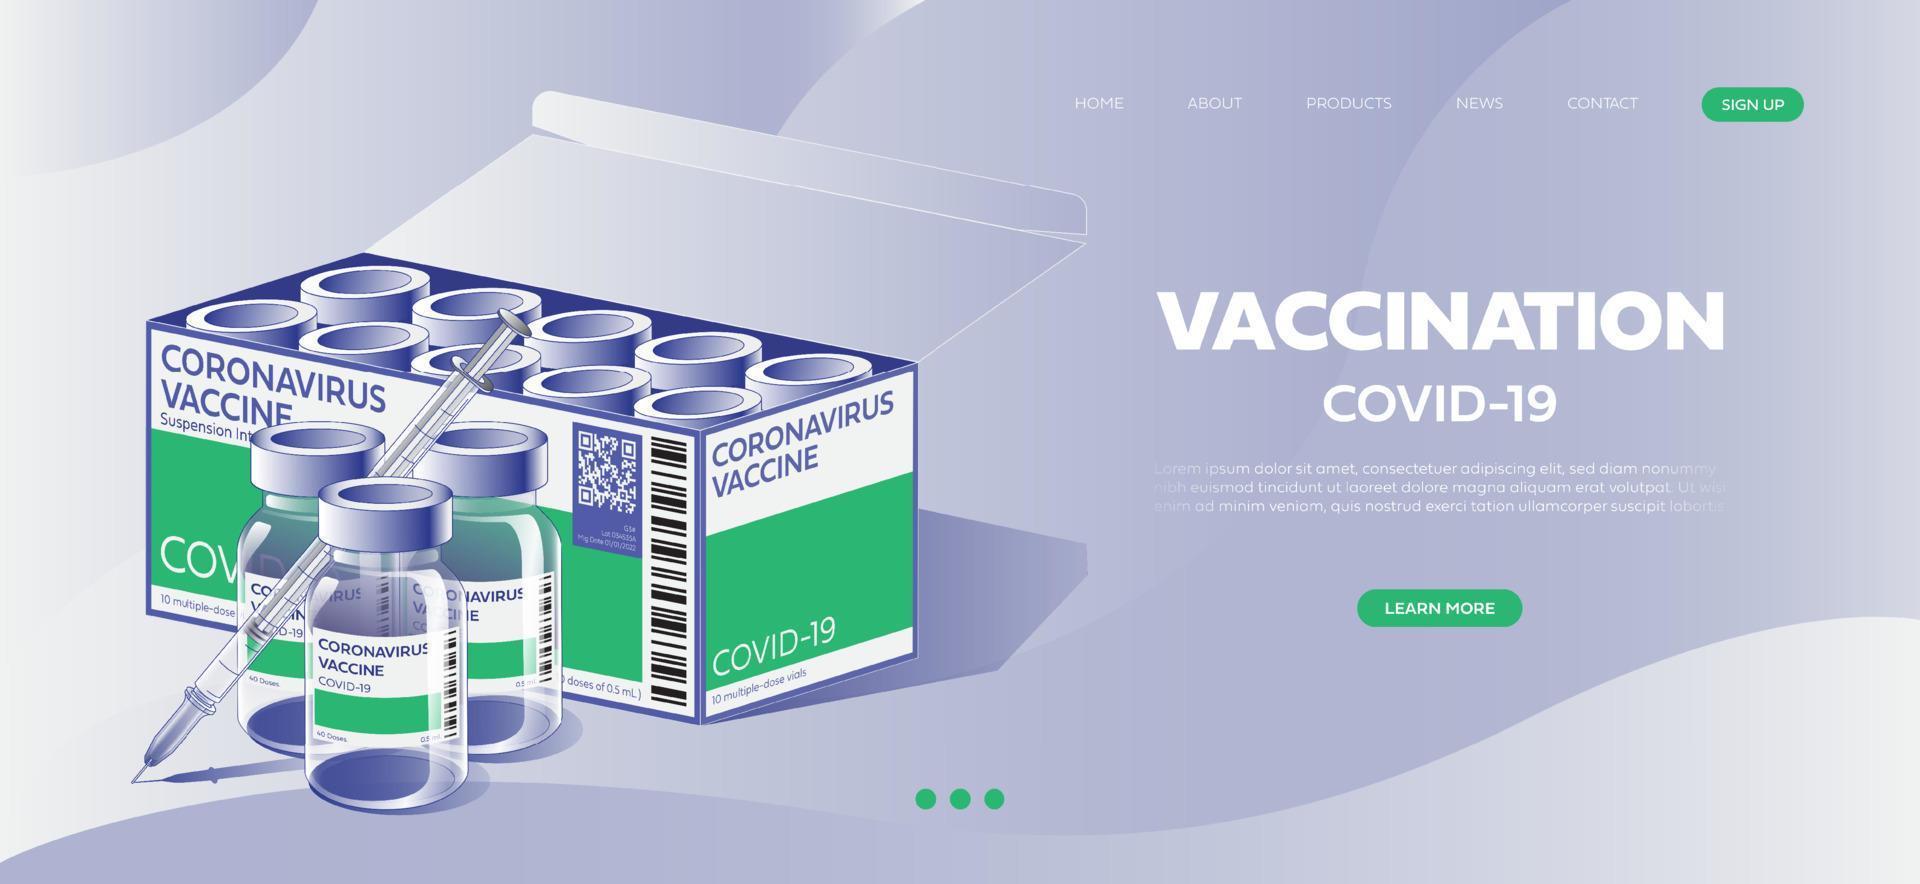 kreativ design för coronavirus vaccin baner bakgrund. covid-19 korona virus vaccination med vaccin flaska och spruta injektion verktyg för covid19 immunisering behandling. vektor illustration.